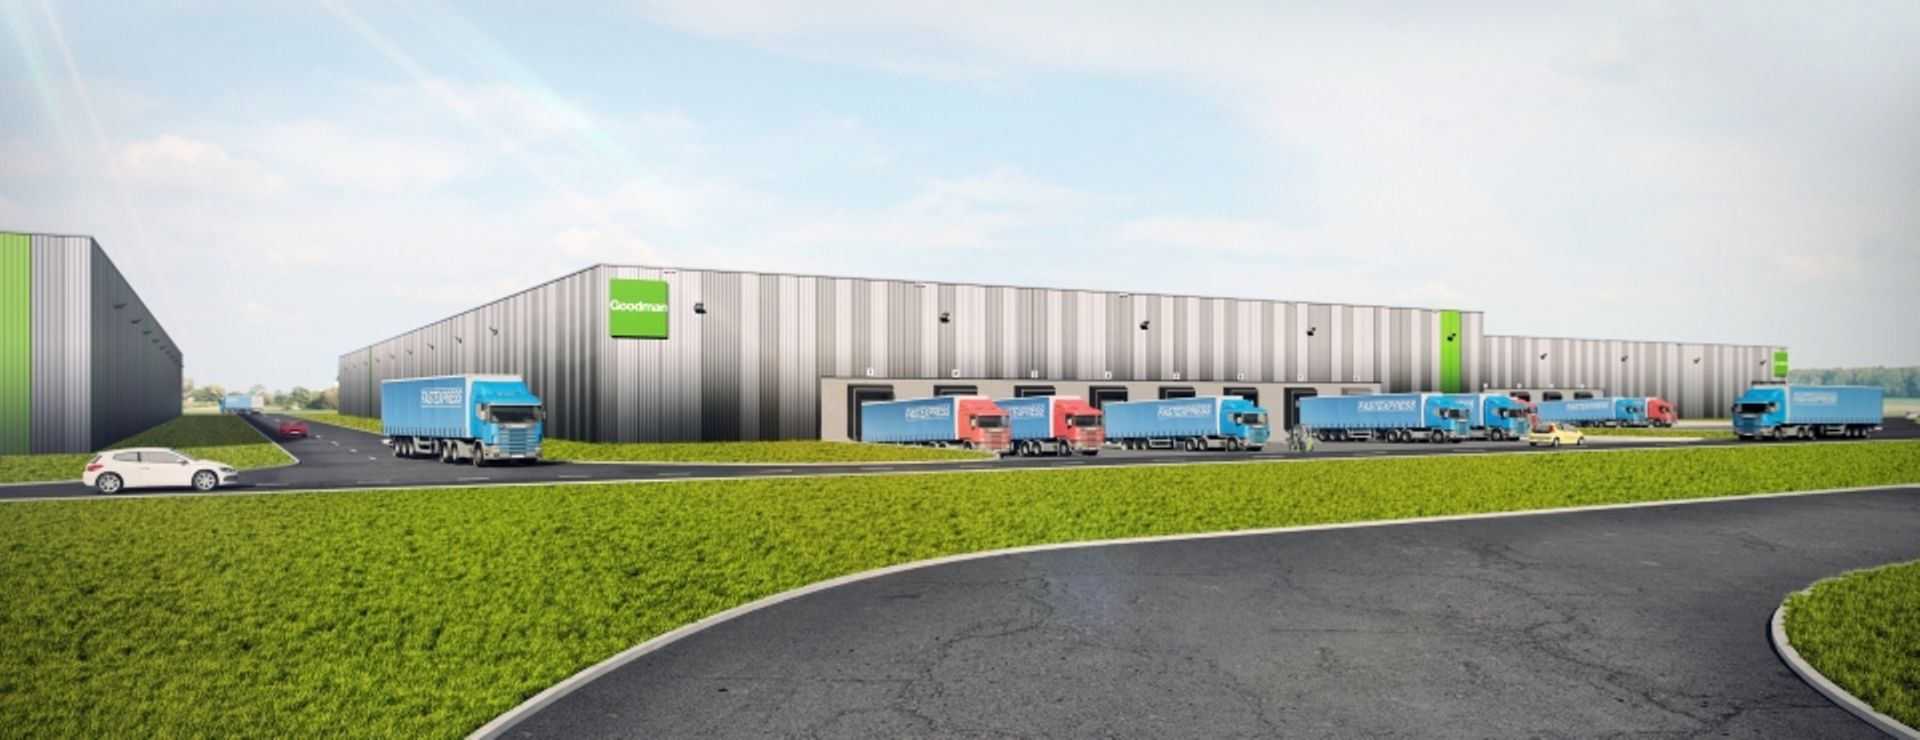 Aglomeracja Wrocławska: Goodman rozbuduje centrum logistyczno-dystrybucyjne w Magnicach